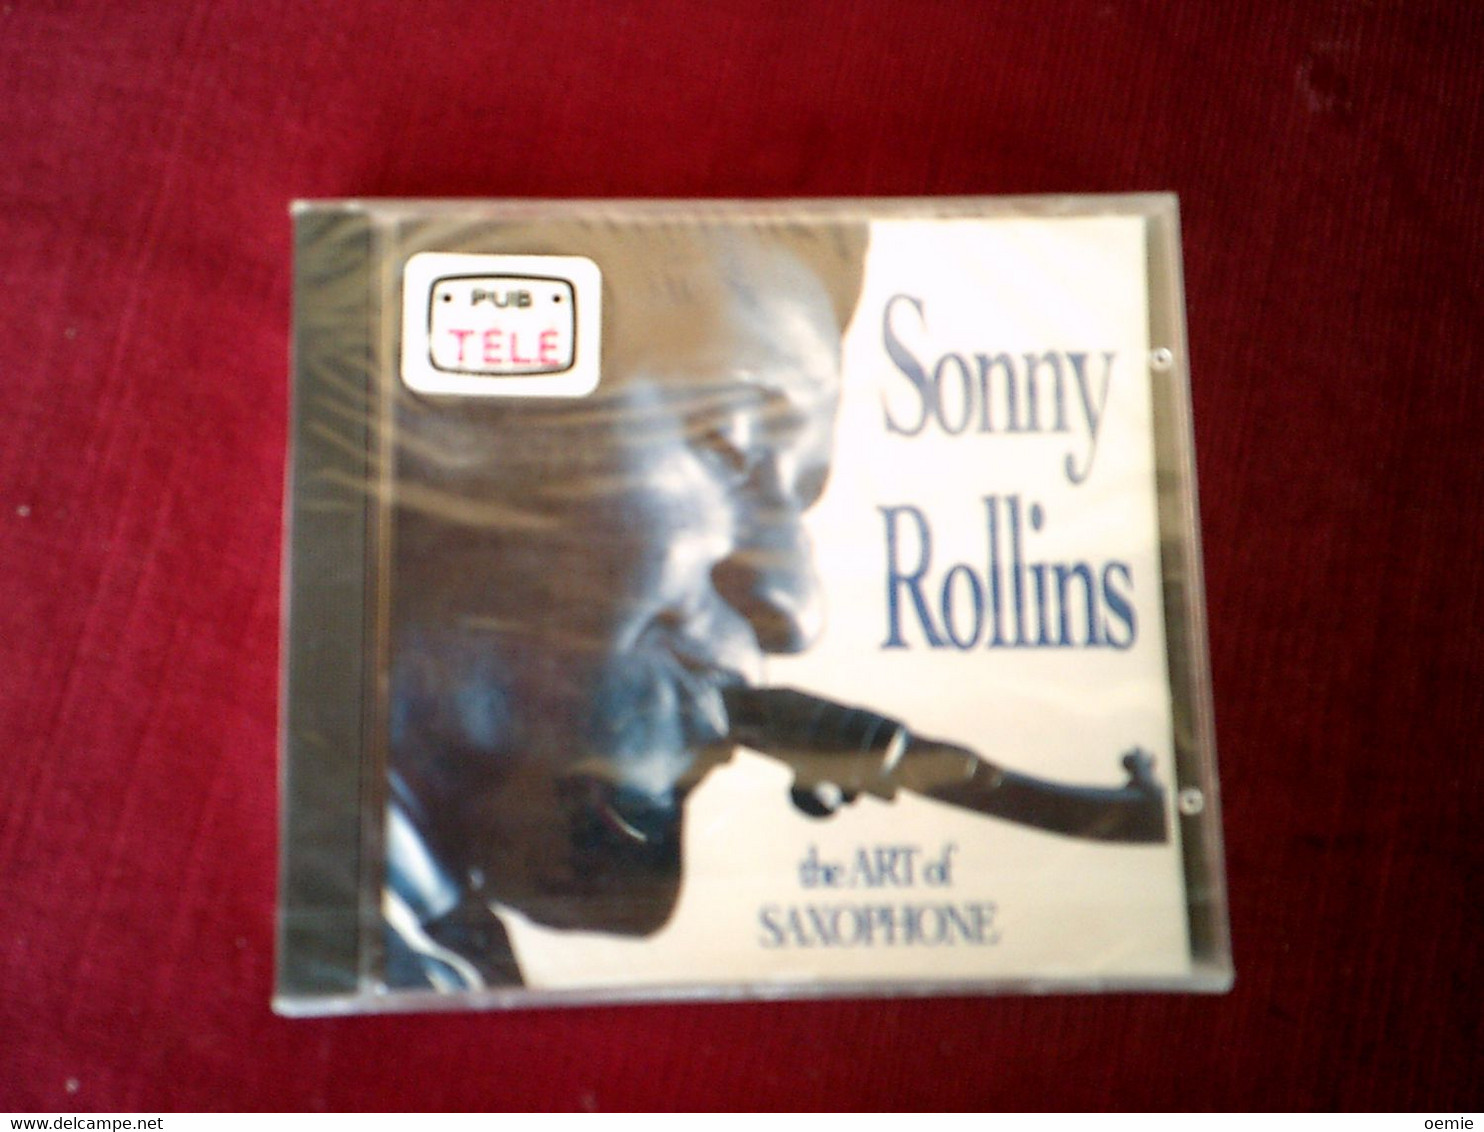 COLLECTION DE 4 CD ALBUM DE JAZZ ° SONNY ROLLINS + MARCUS ROBERTS + ROBERT NIGHTHWK + SAM COOKE - Collezioni